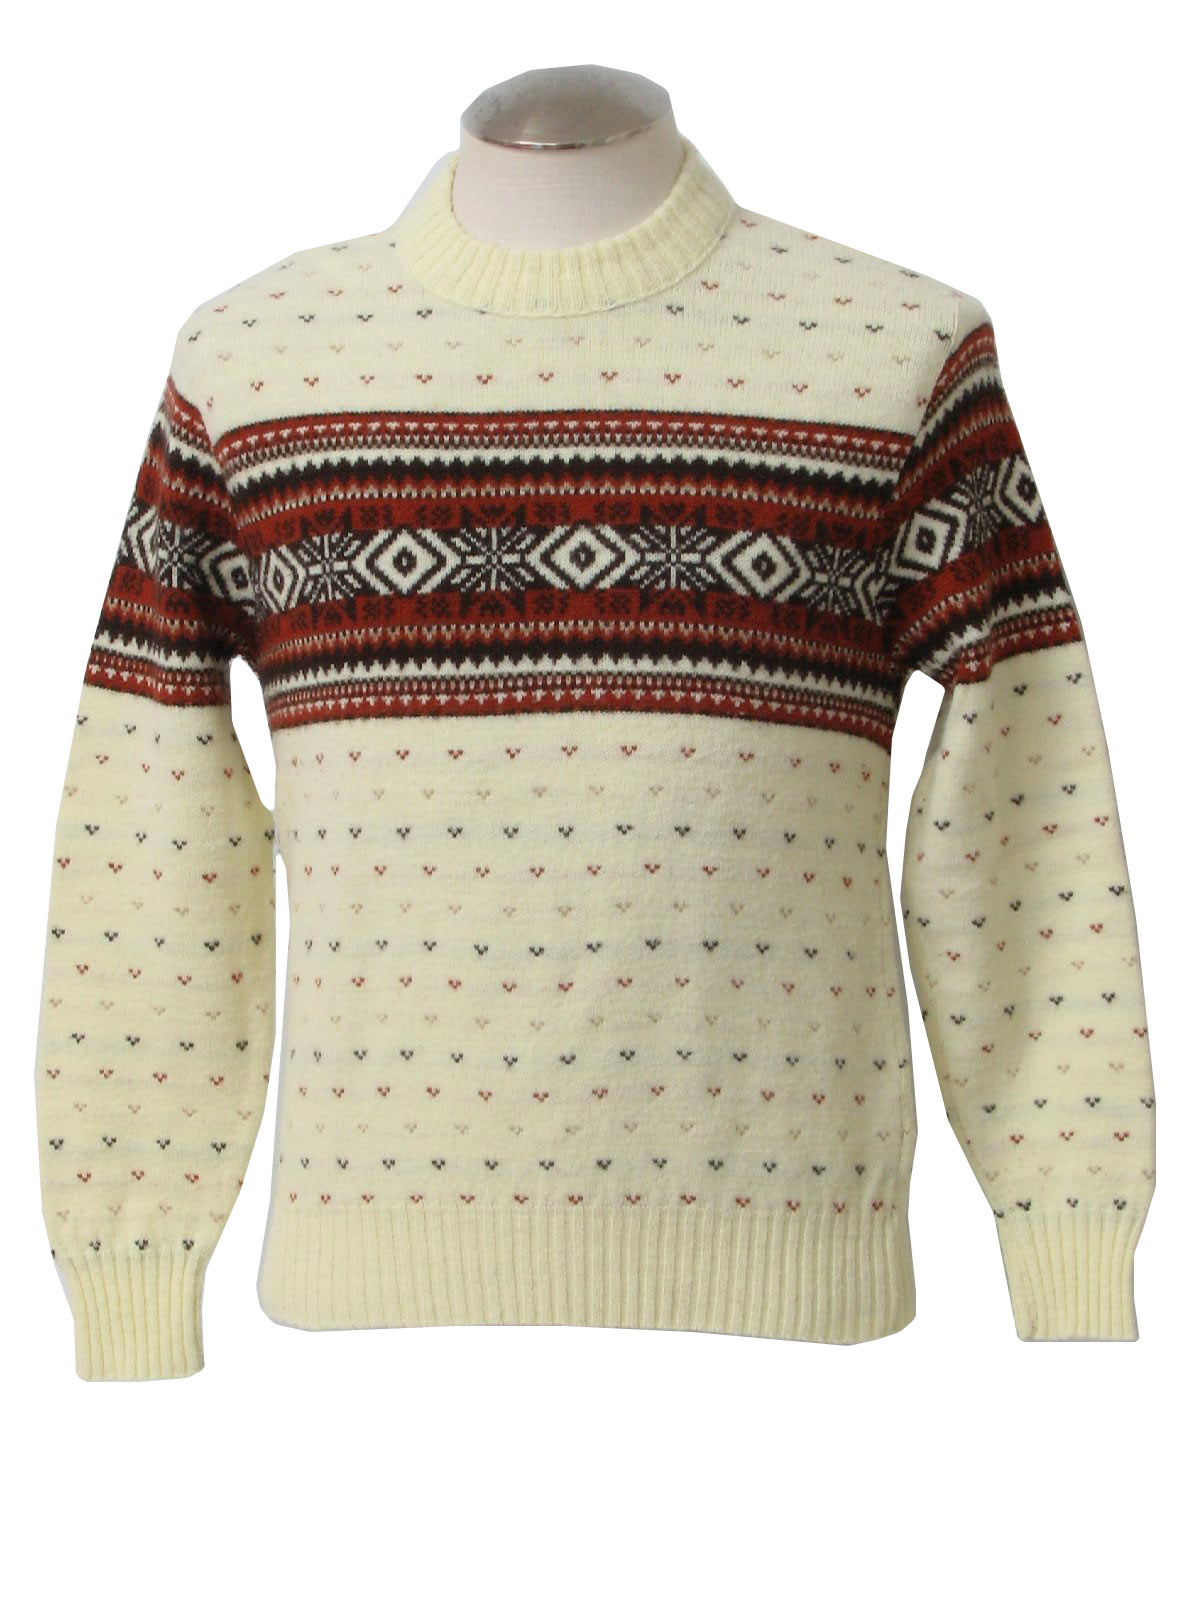 Retro 80's Sweater: 80s -Puritan- Unisex off white, burnt orange, tan ...